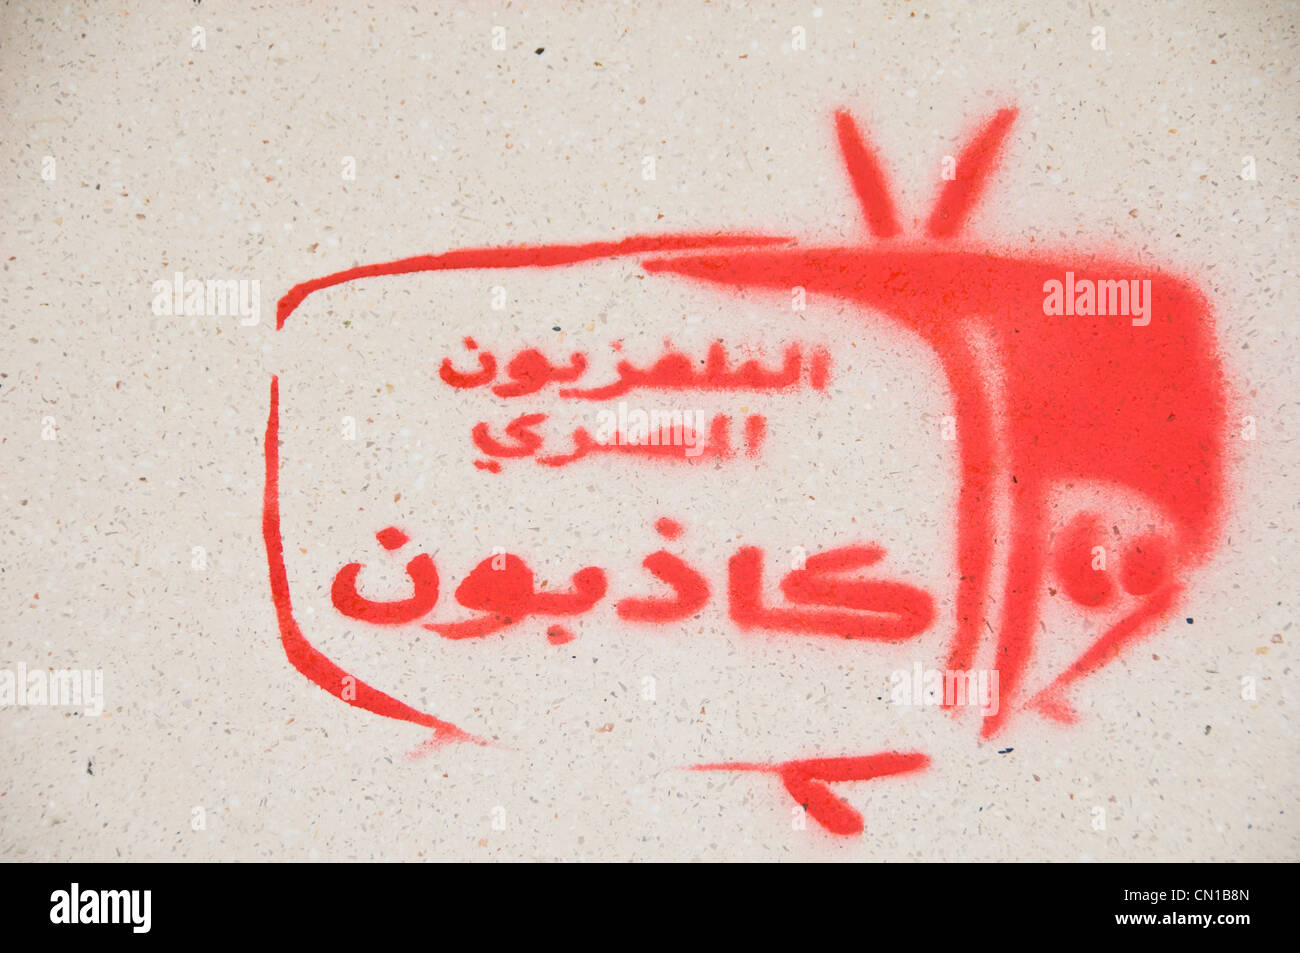 Stencil Art, Pro-révolutionnaire des graffitis sur les murs dans le centre du Caire en Égypte. L'écriture dit : "La télévision égyptienne est un menteur" Banque D'Images